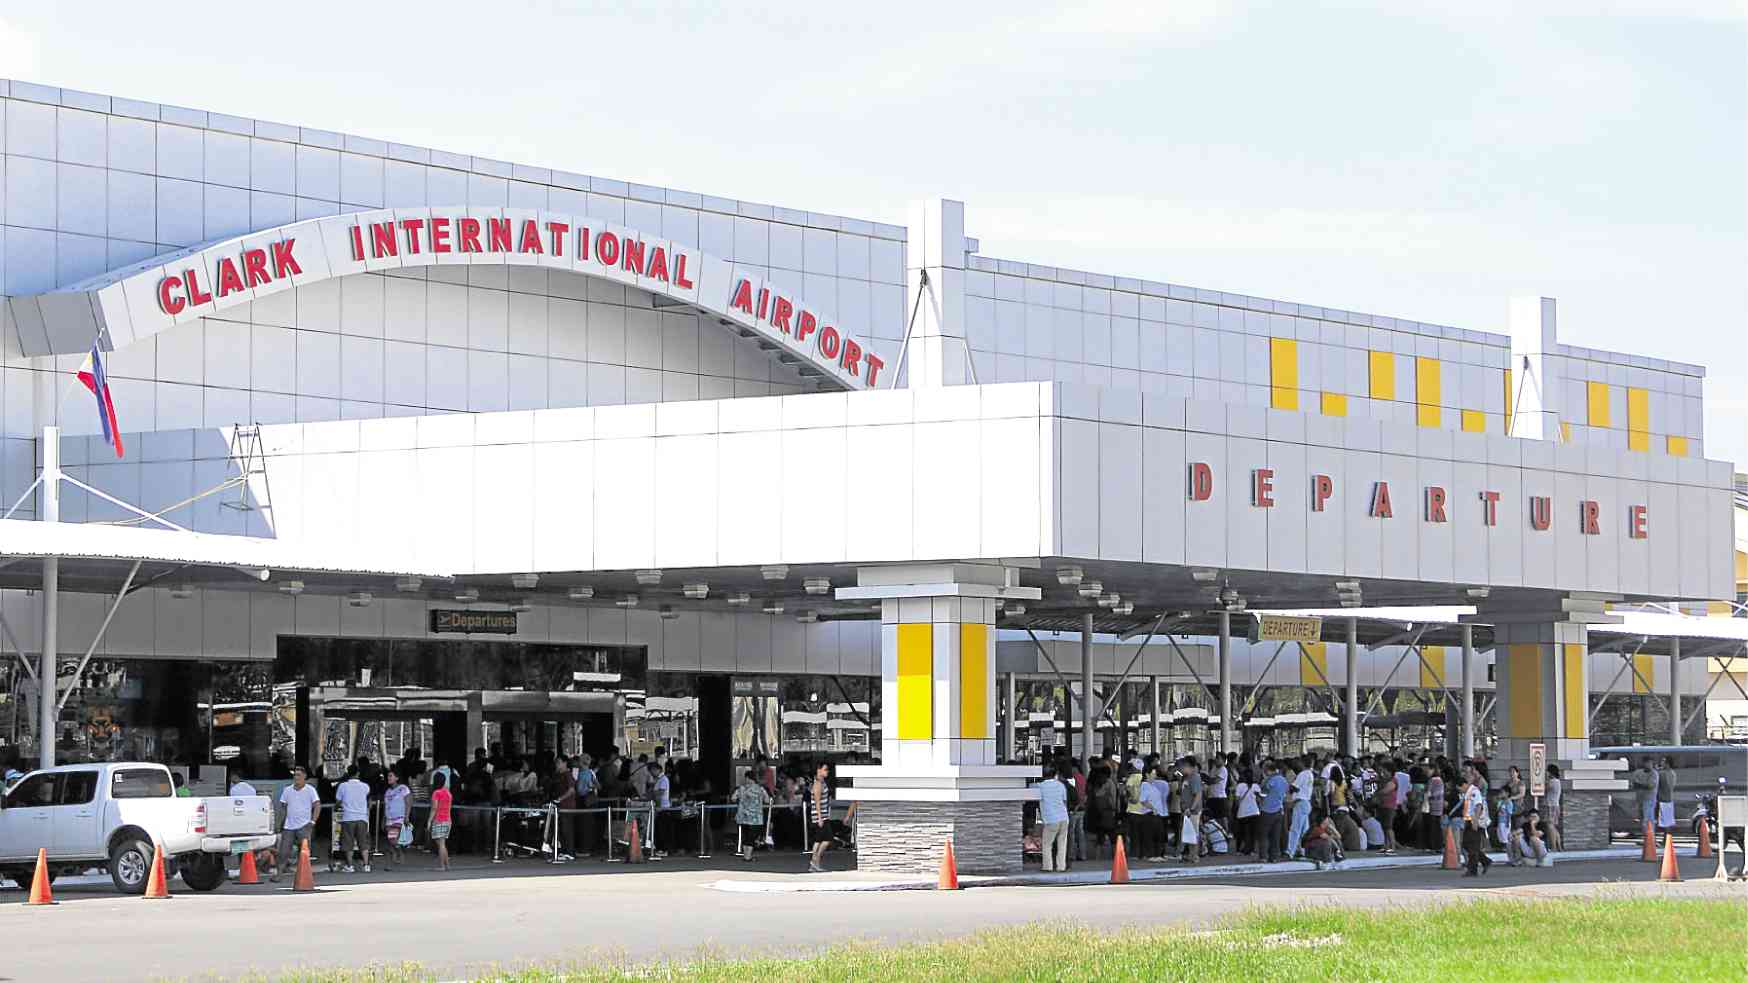 clark international airport jobs off 62 